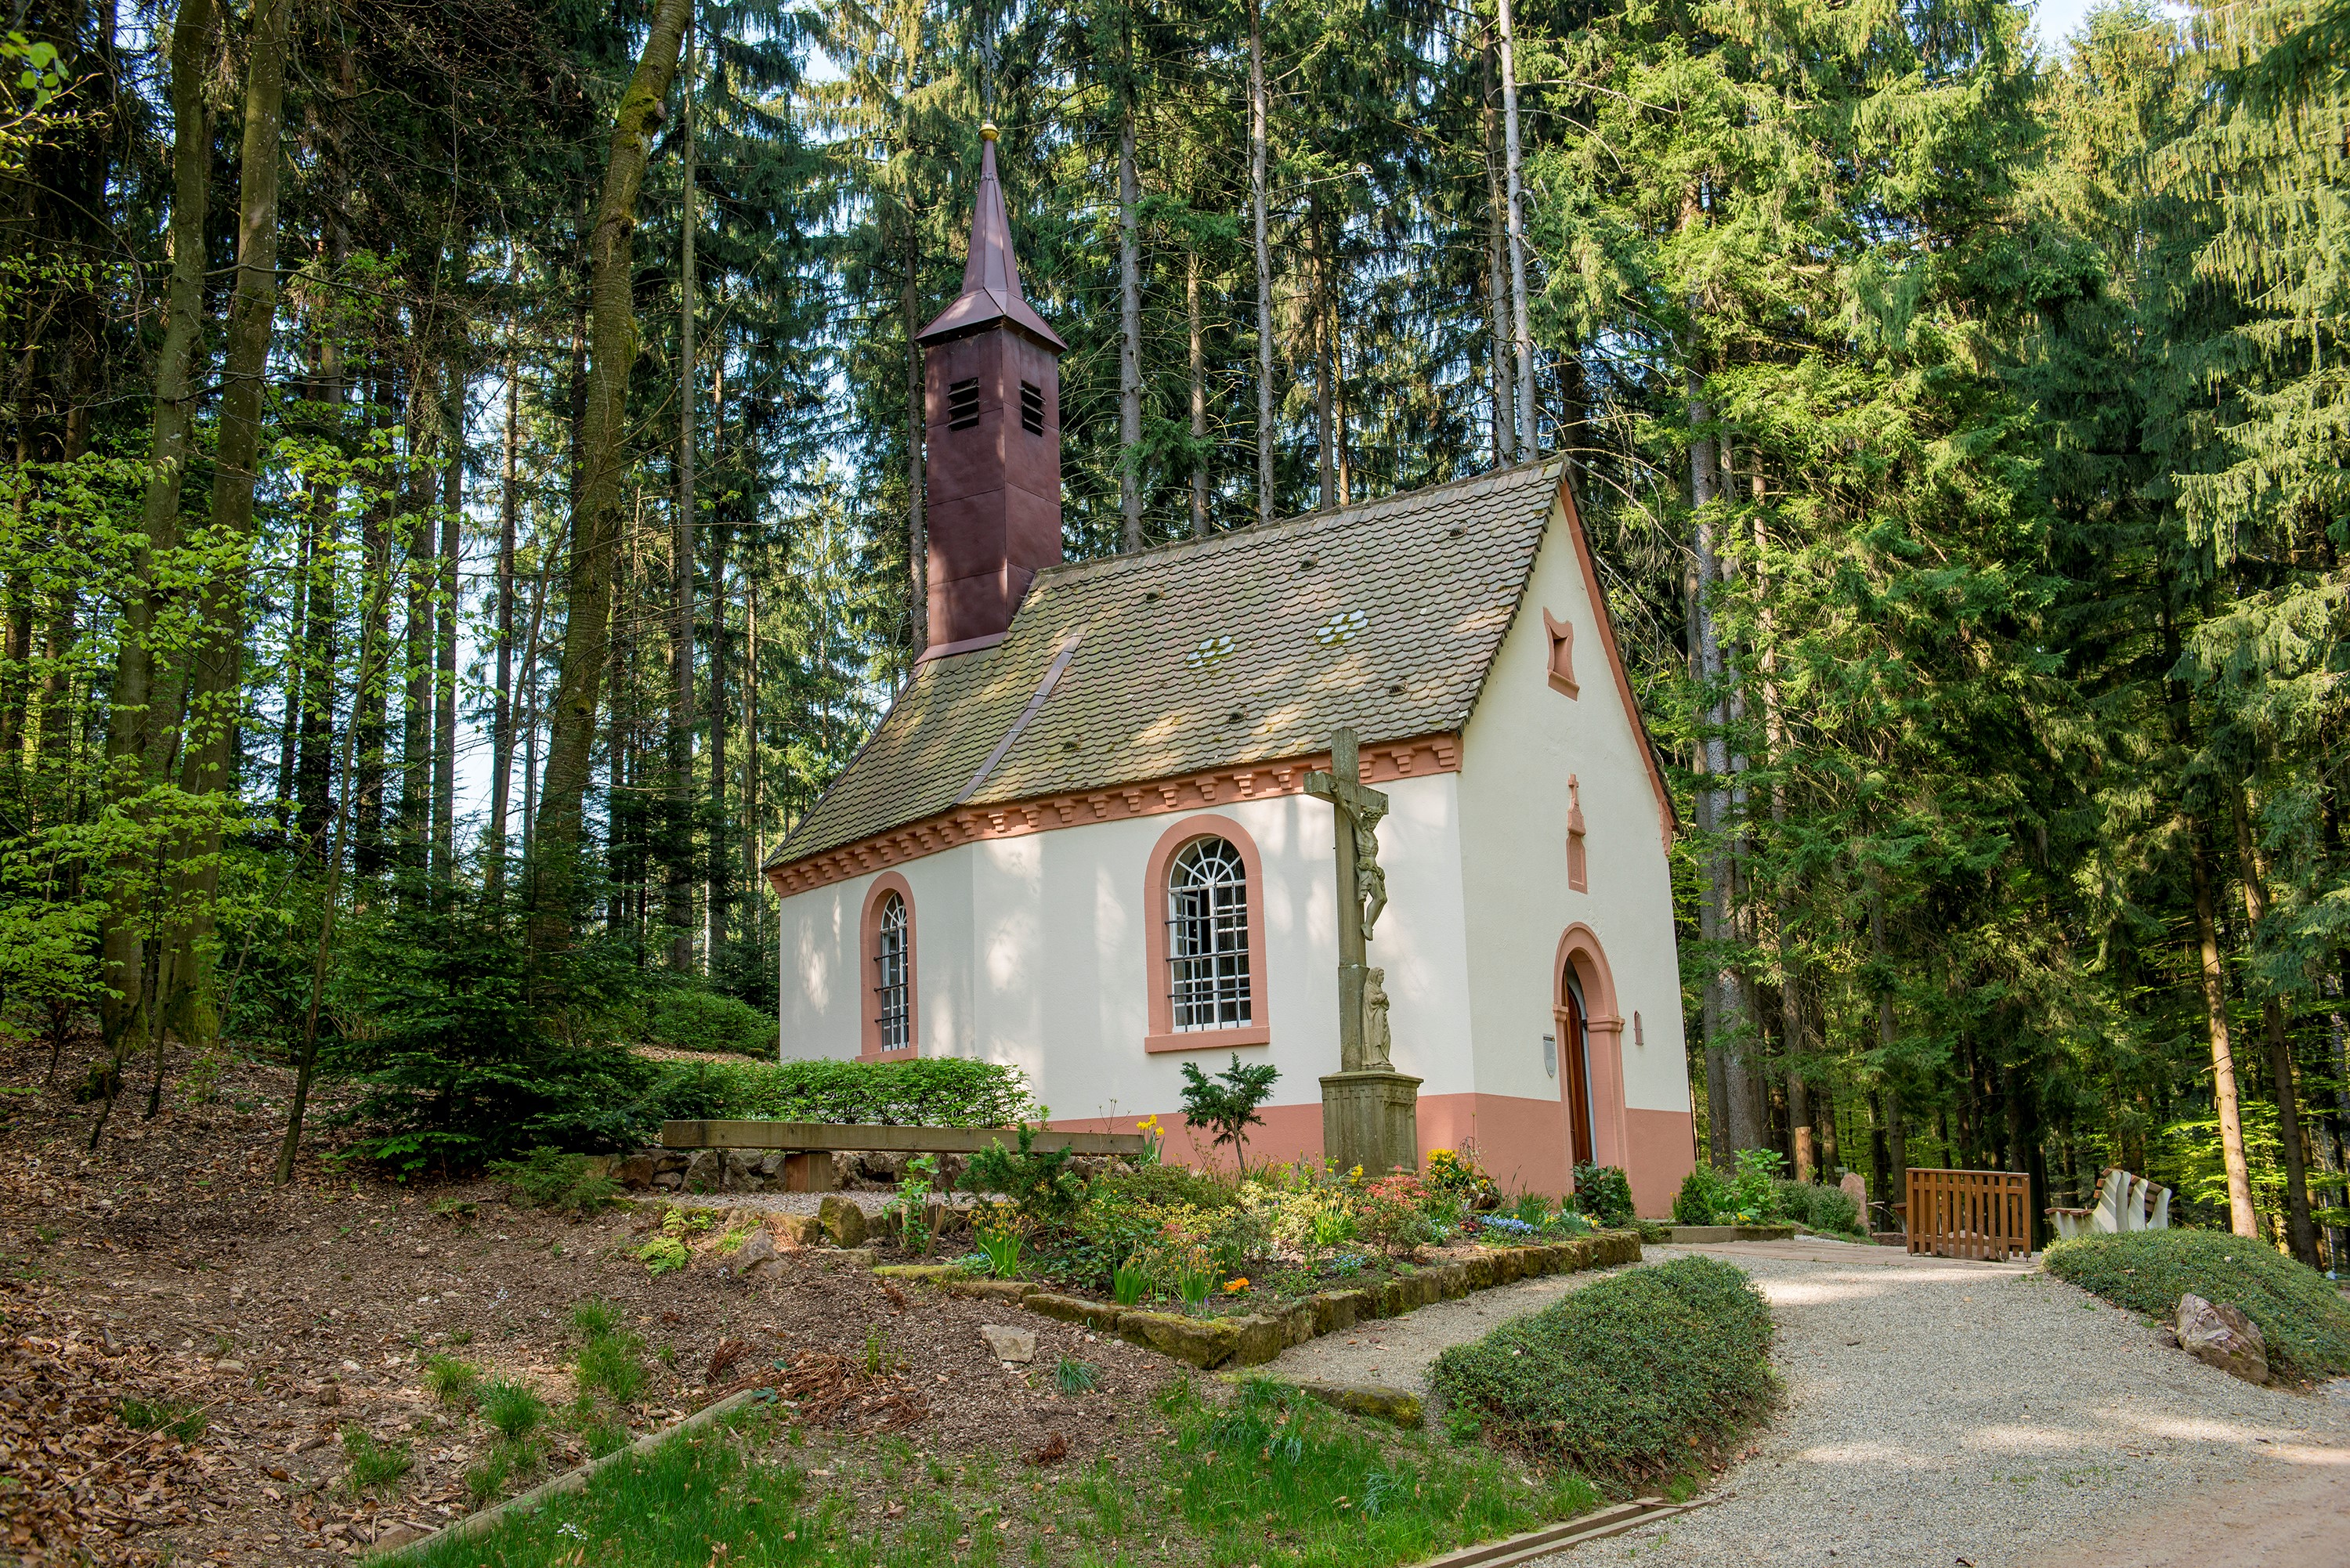  Kniesteinkapelle in Schweighausen 